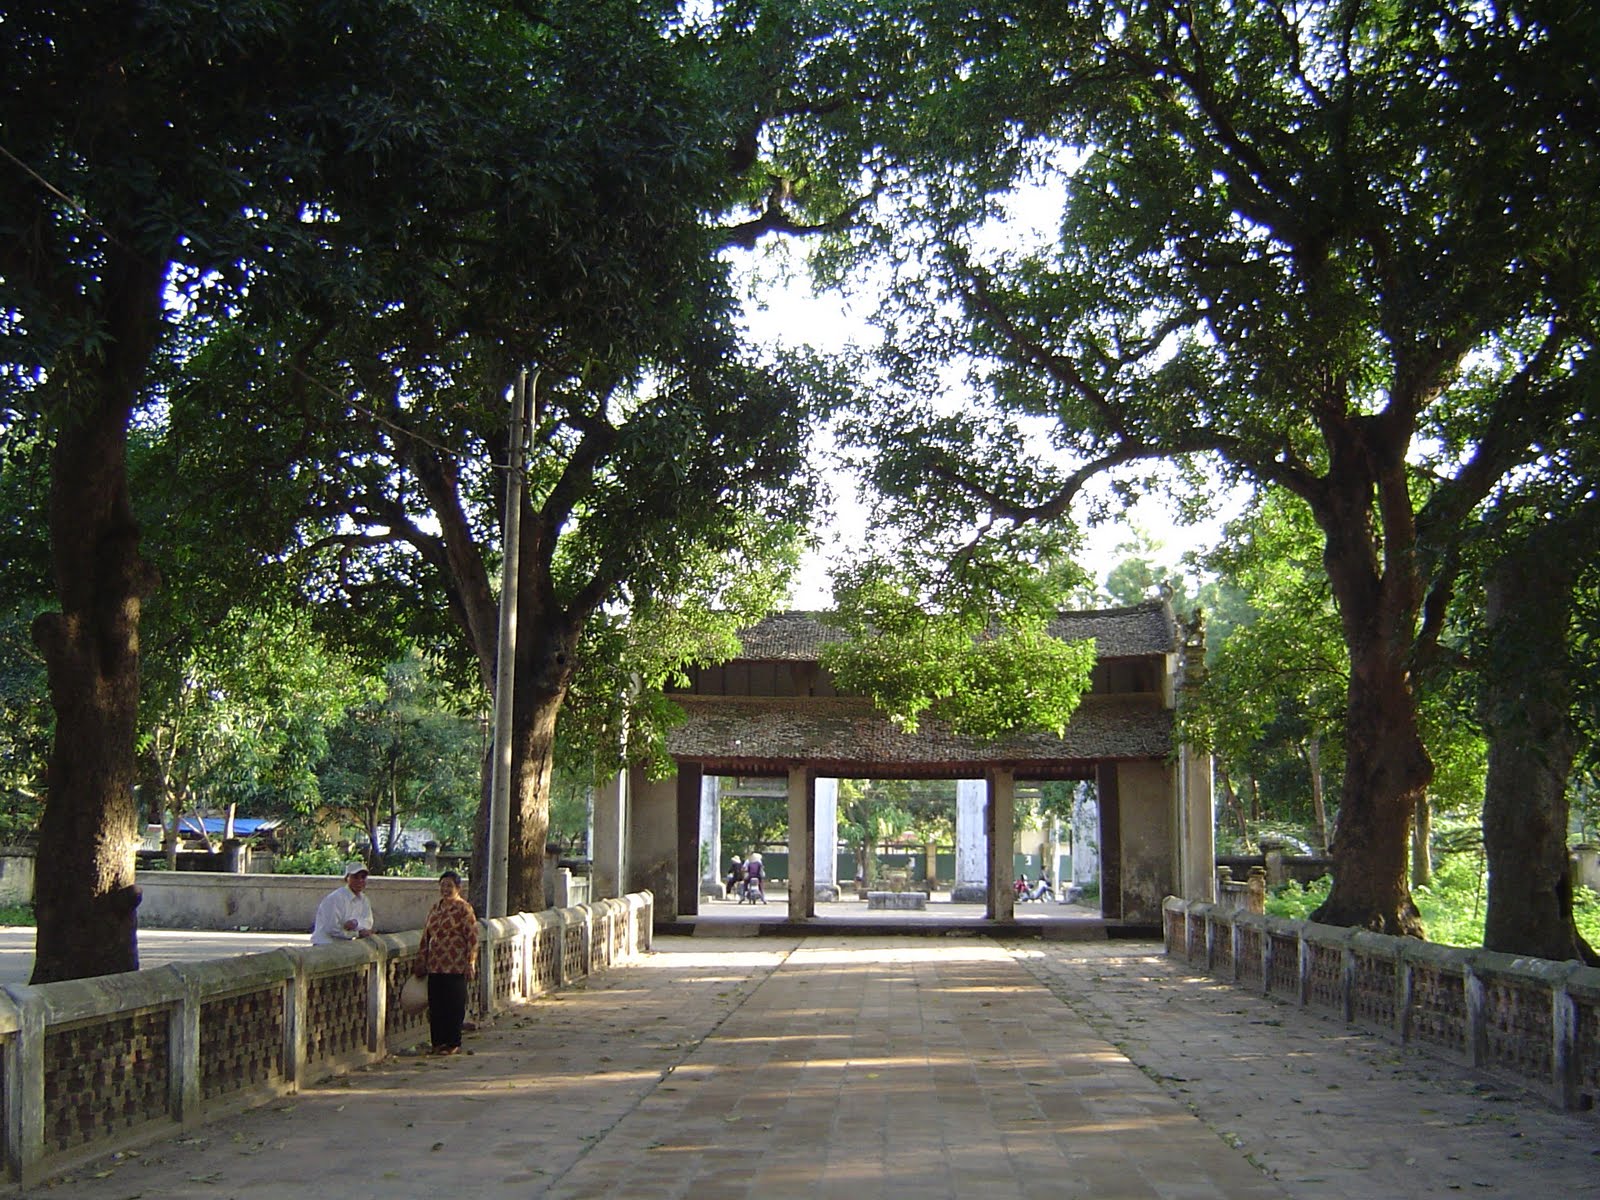 lang-pagoda-chua-lang